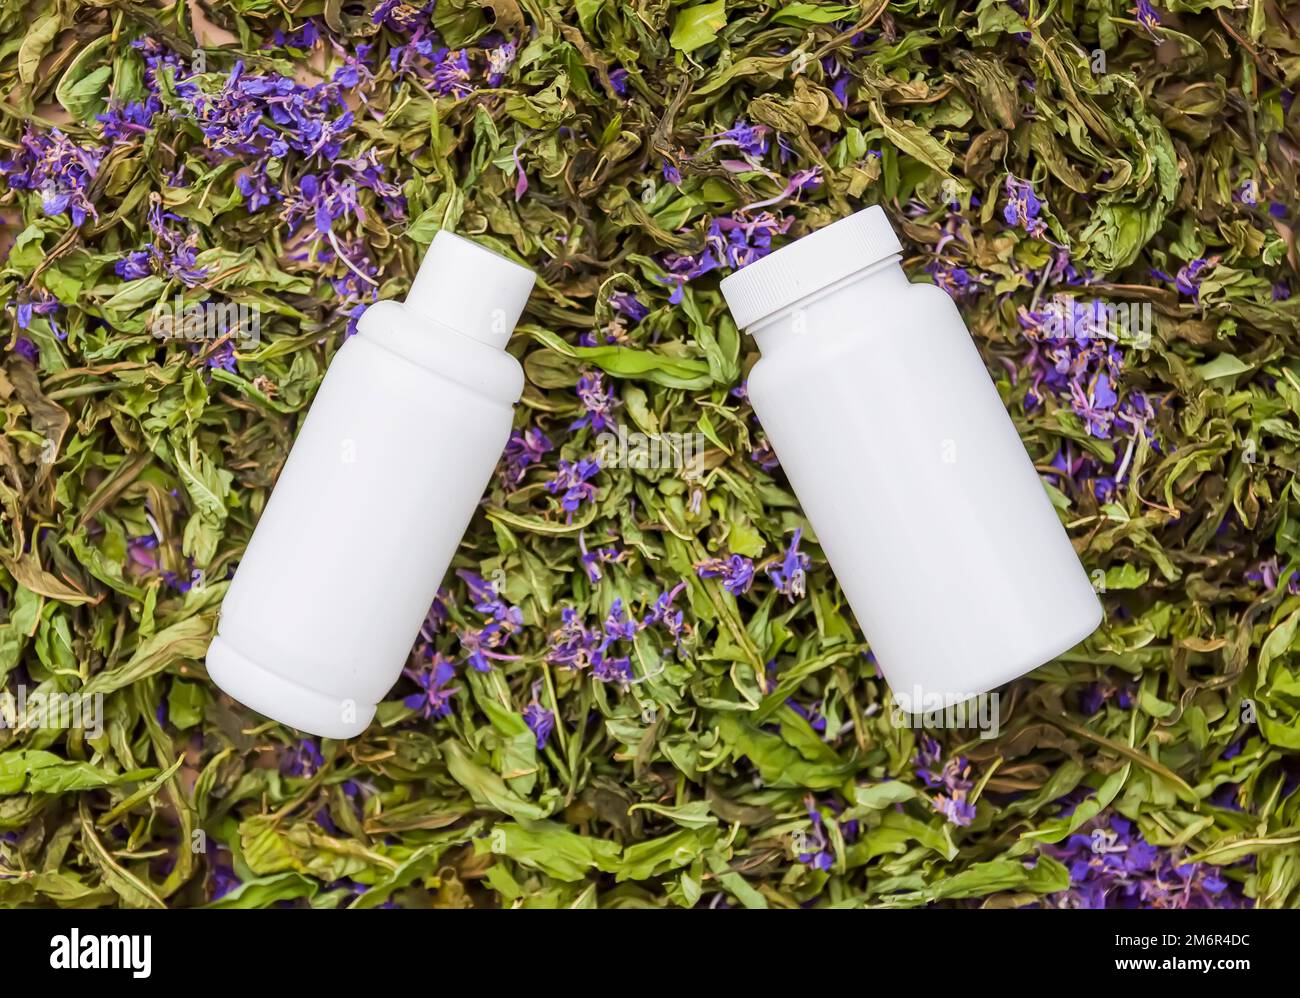 Weiße Kunststoffbehälter auf getrockneten Blüten der Pflanze Blooming sally, Epilobium angustifolium, Fireweed oder Rosebay Willowherb. Stockfoto